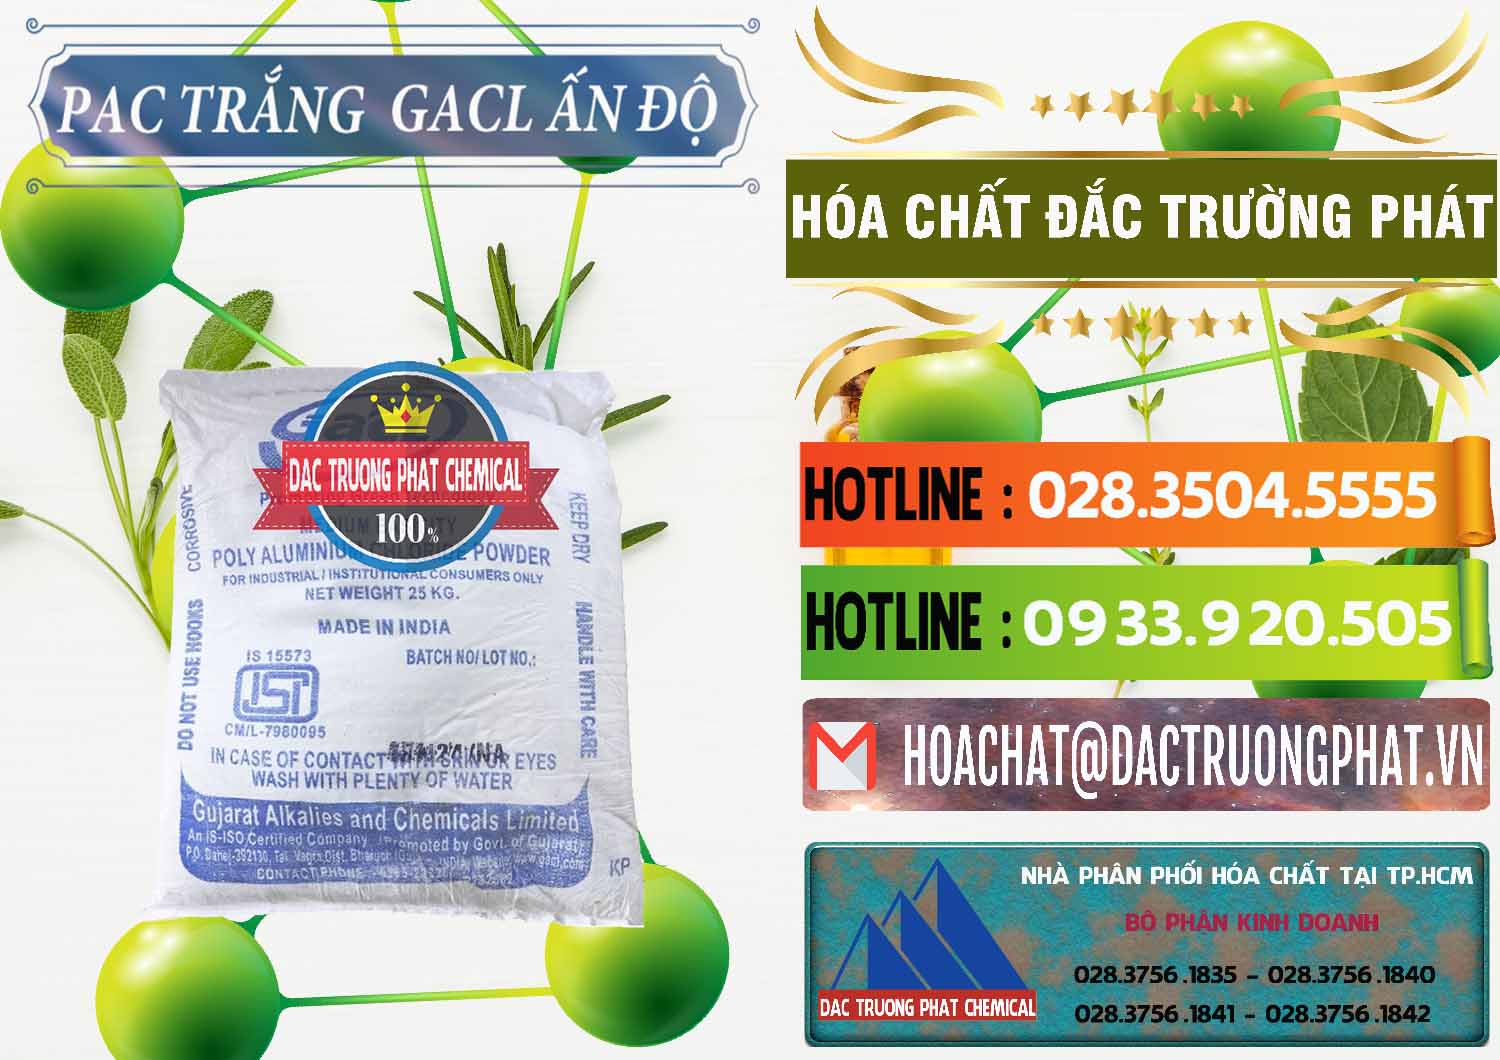 Nơi bán & cung cấp PAC - Polyaluminium Chloride Trắng GACL Ấn Độ India - 0266 - Cty bán và phân phối hóa chất tại TP.HCM - cungcaphoachat.com.vn